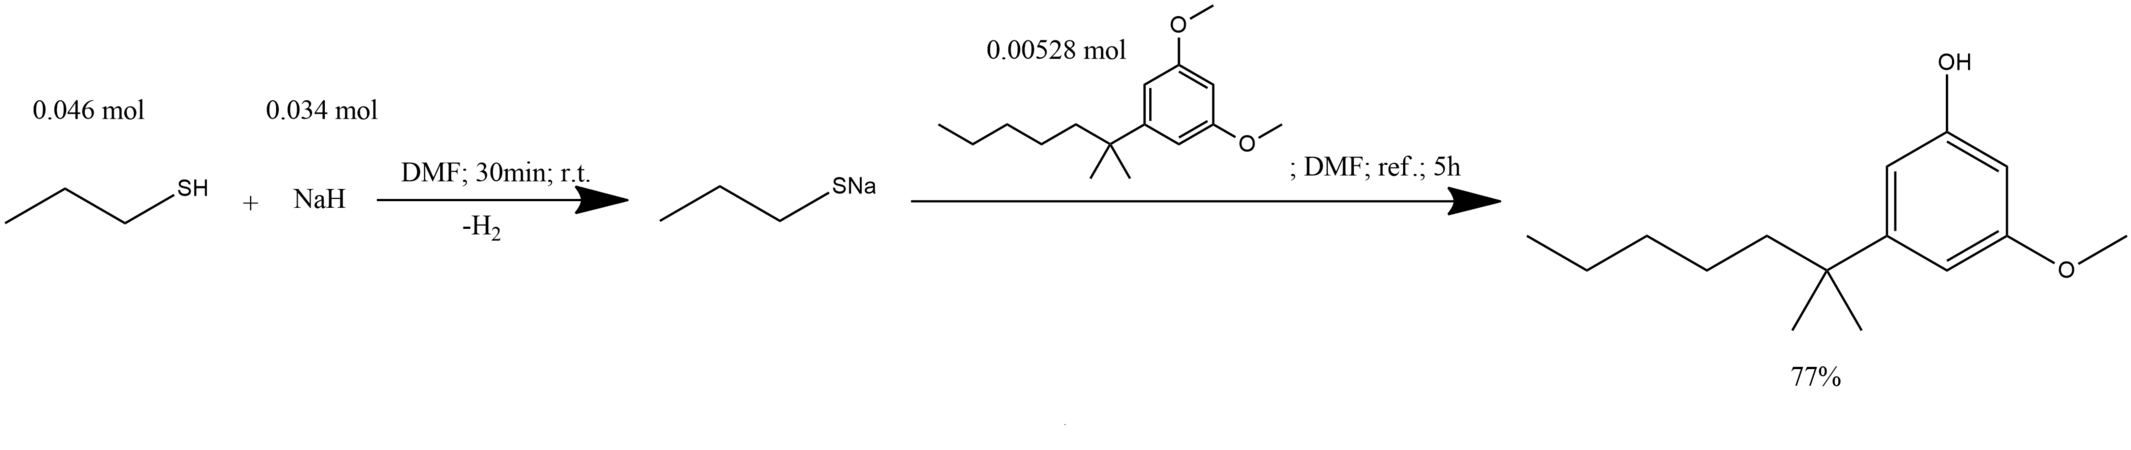 Synthesis of 2-(3-methoxy-5-hydroxyphenyl)-2-methylheptane.png